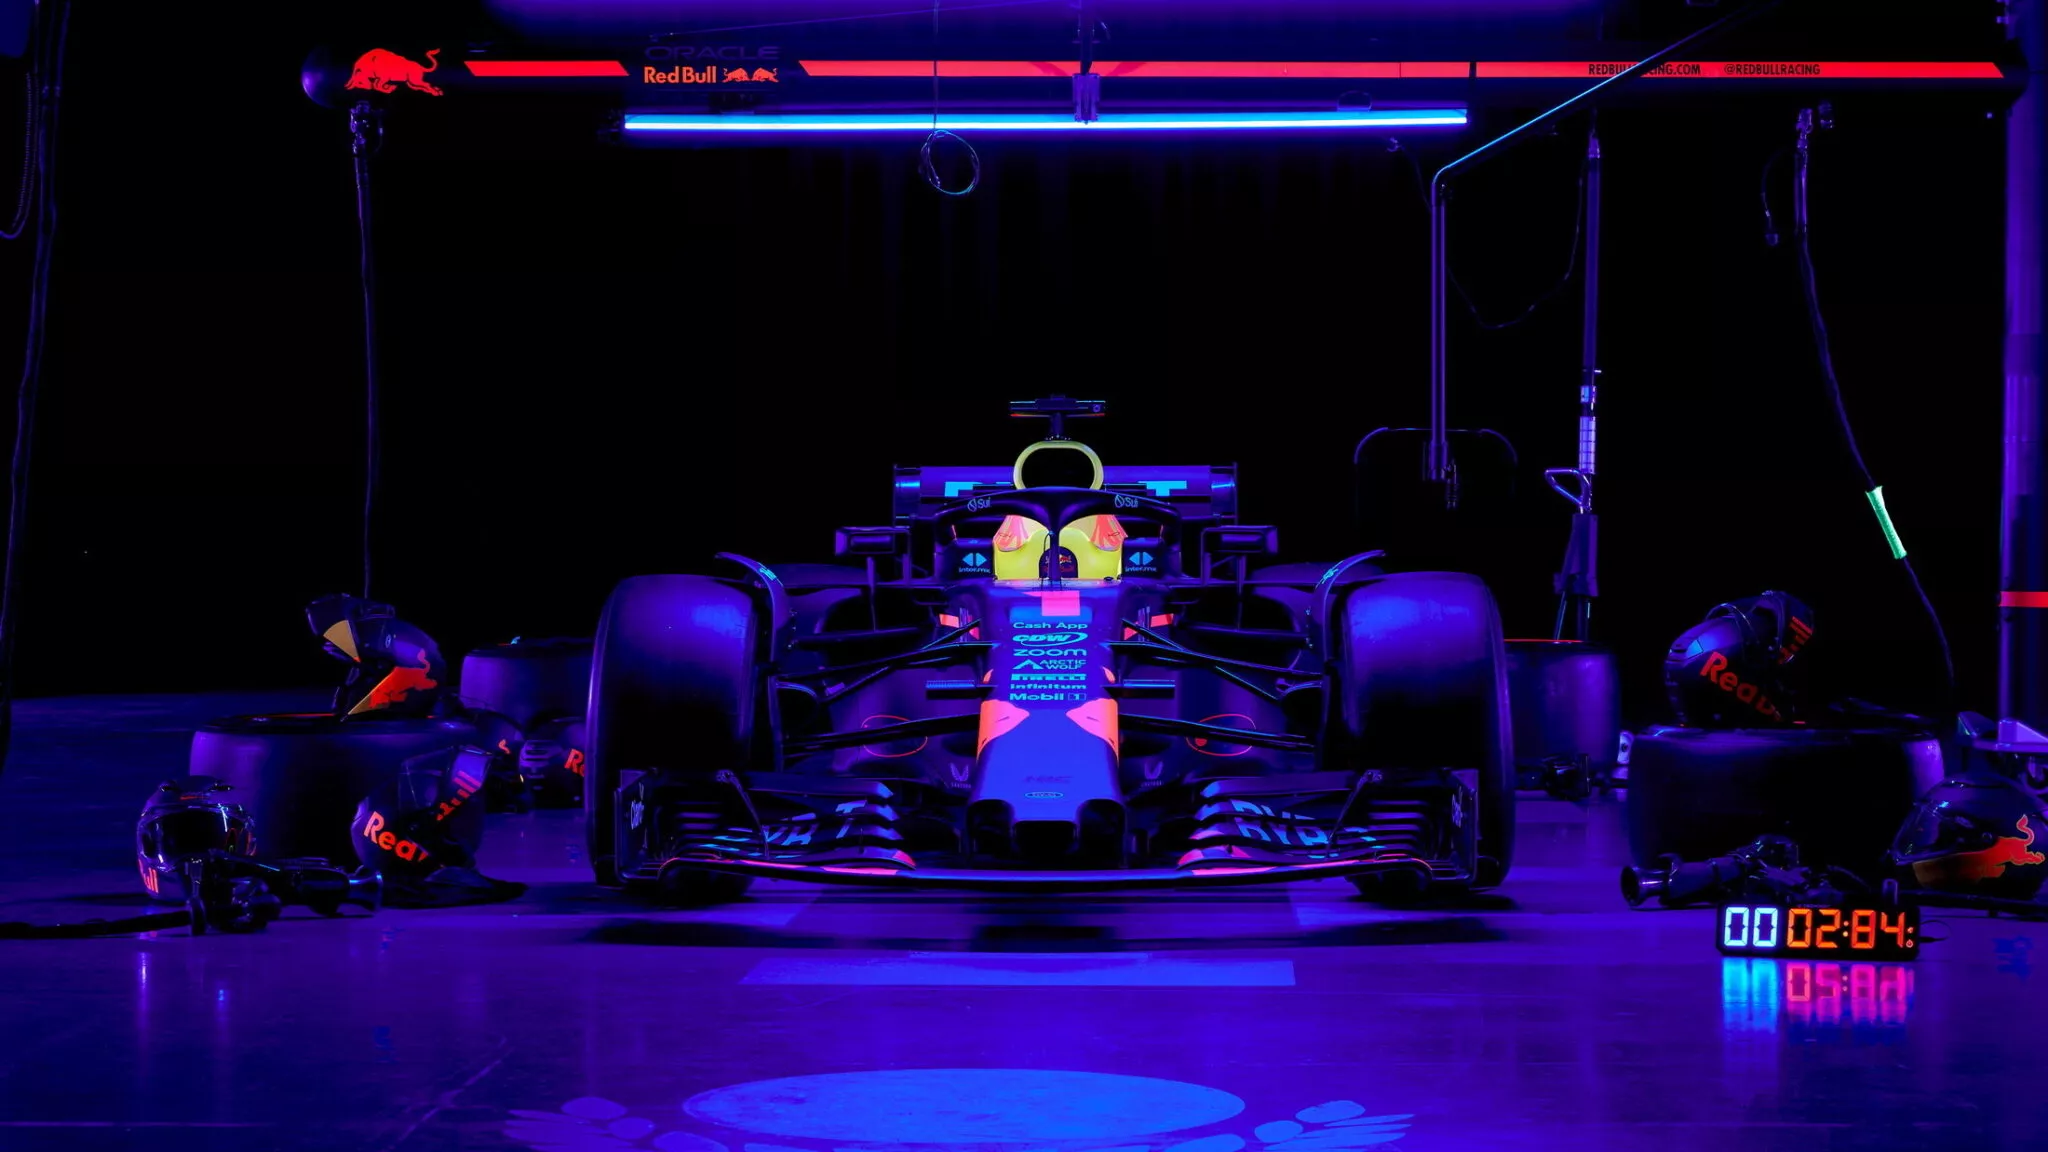 فريق ريد بول ينجح في تغيير إطارات سيارات فورمولا 1 في الظلام الدامس خلال 3 ثوان فقط! 1